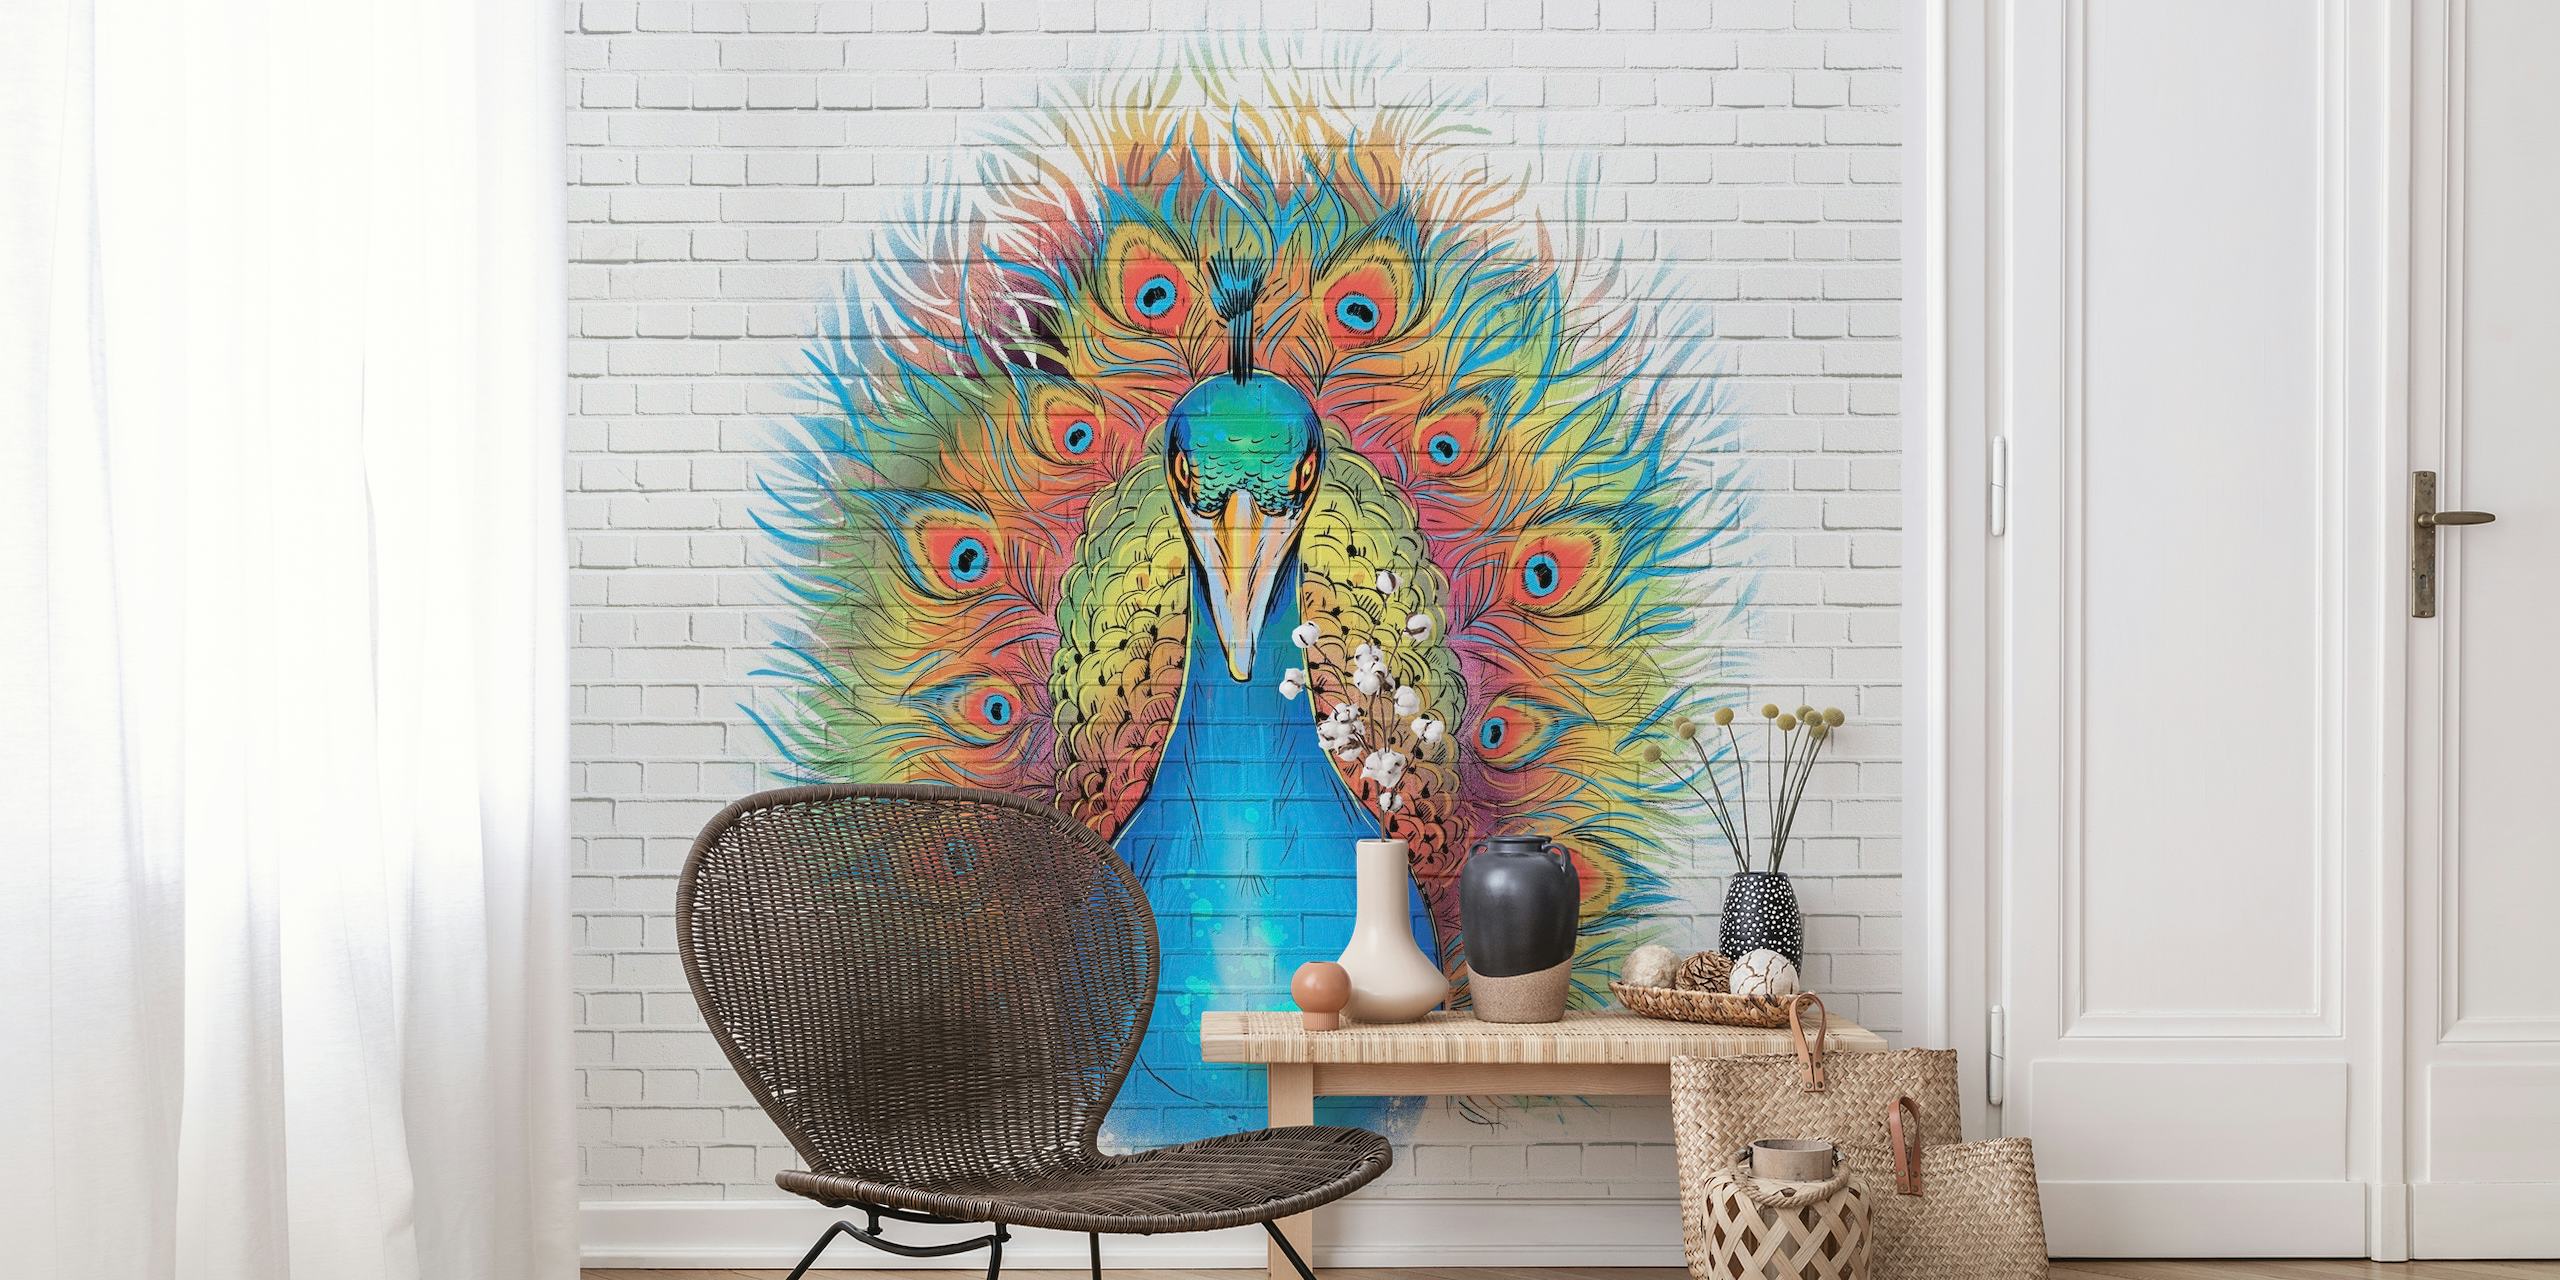 Papier peint Angry Peacock Graffiti inspiré du street art avec des couleurs vives sur un fond de brique blanche